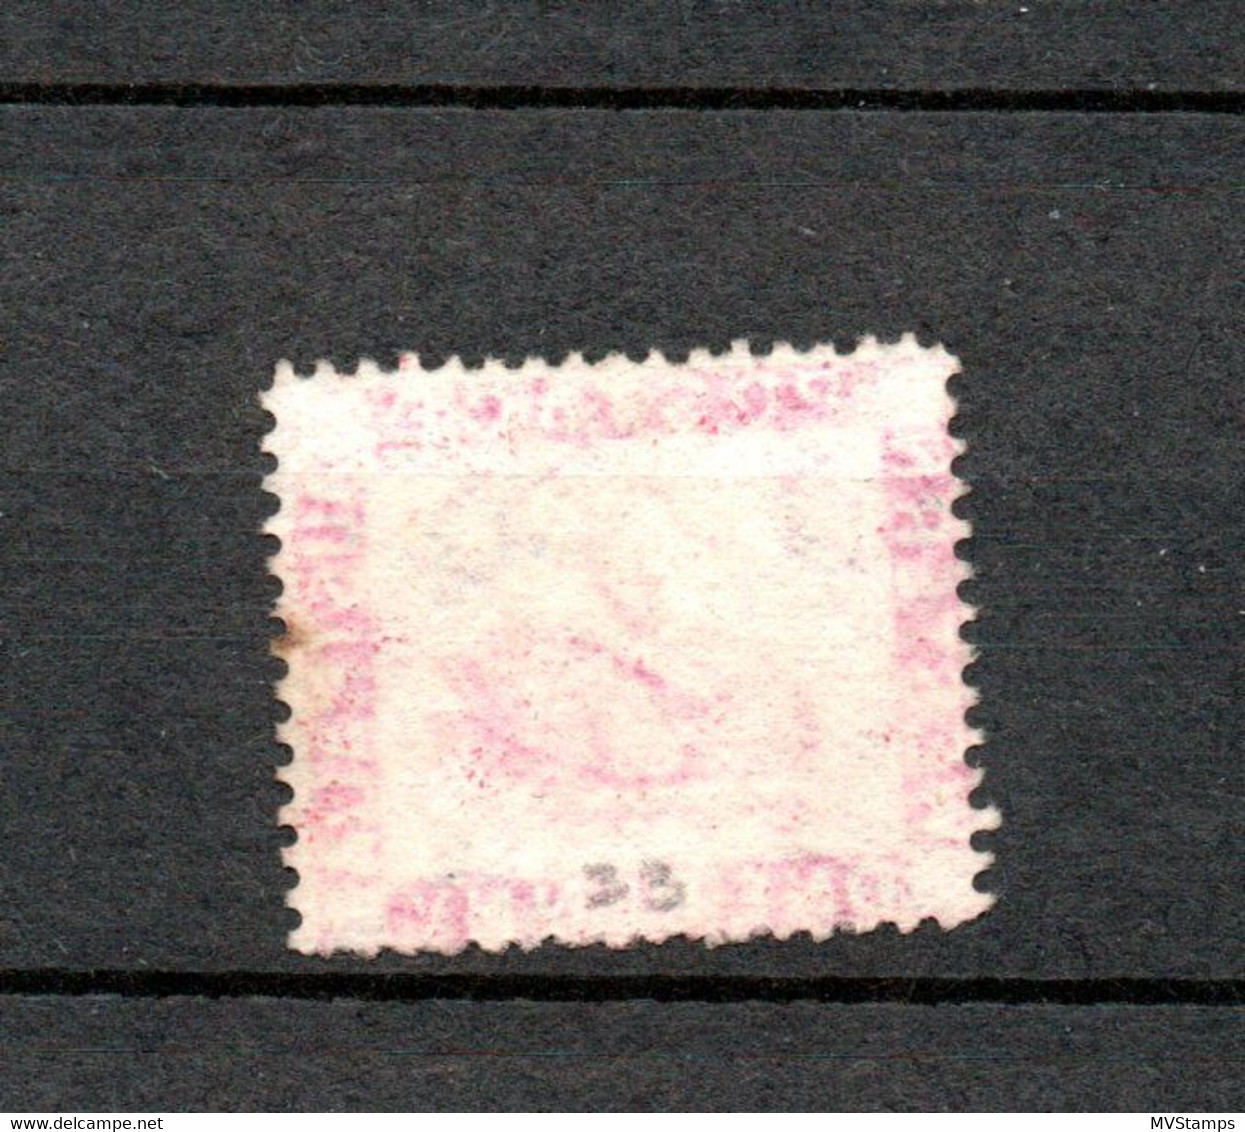 Western Australia 1861 Old Def.Swan Stamp (Michel 9) Nice Used - Usados